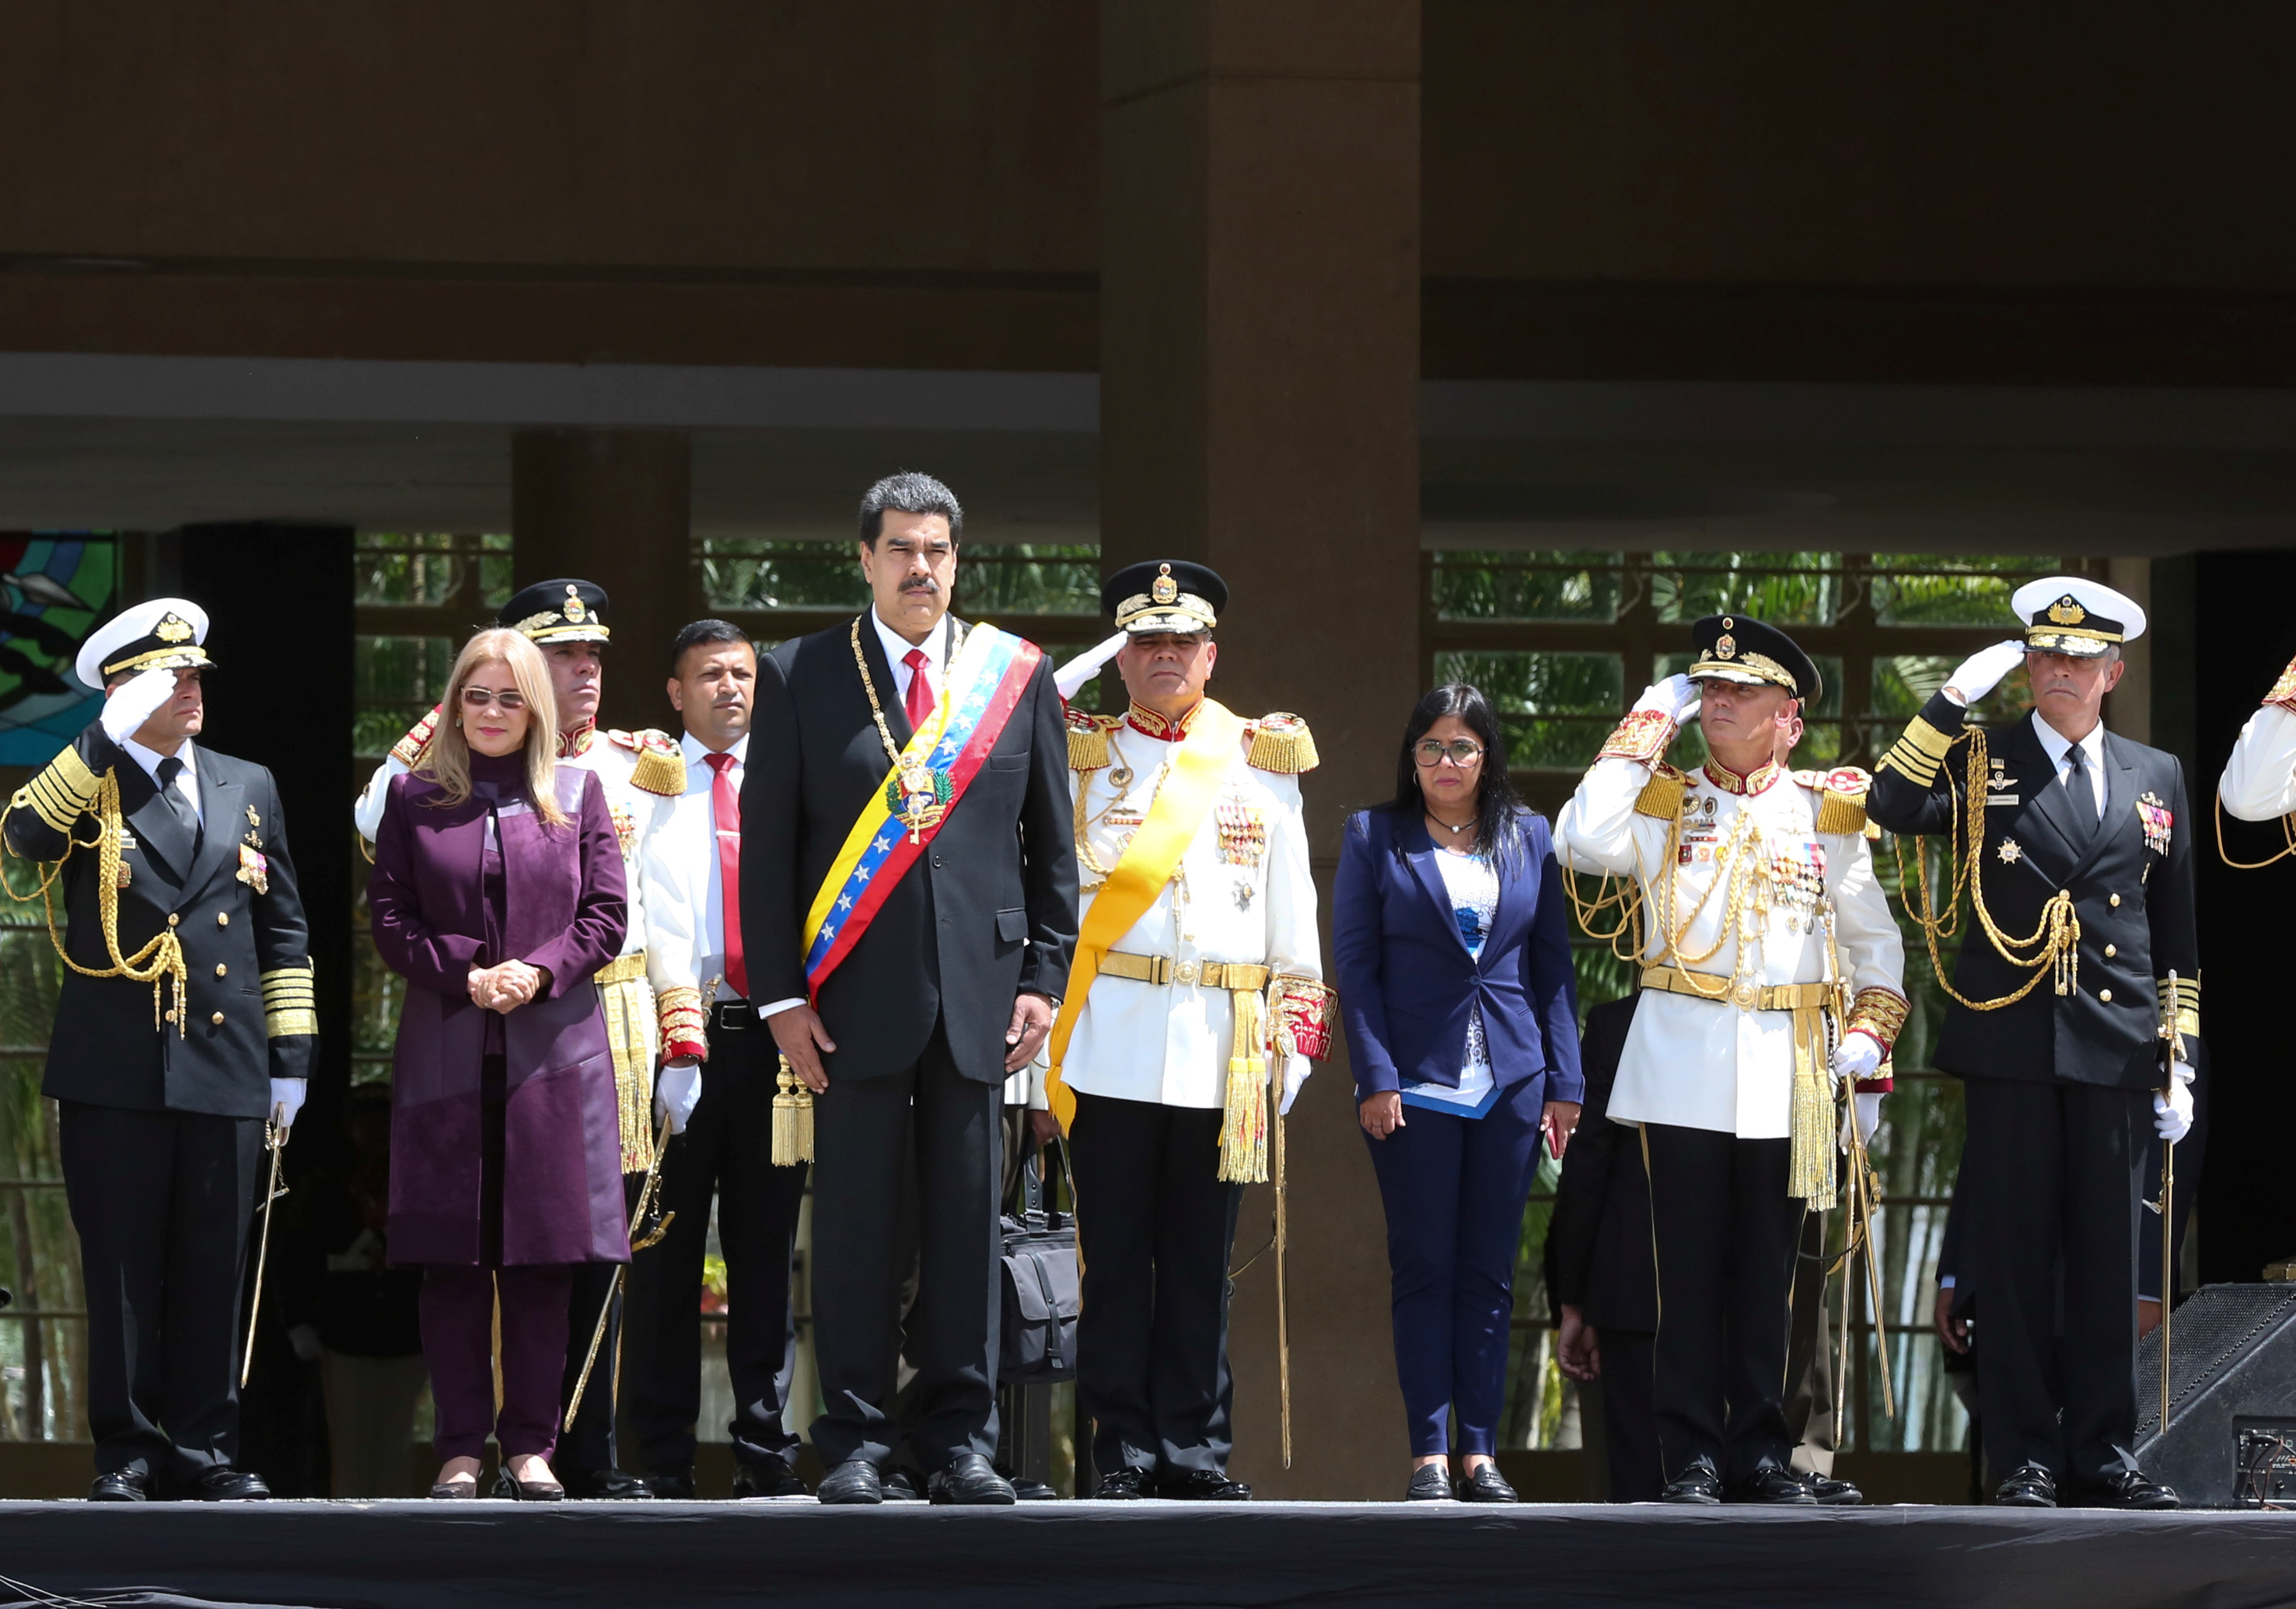 “Estas de salida dictador”: El recadito de este exministro de Chávez a Maduro